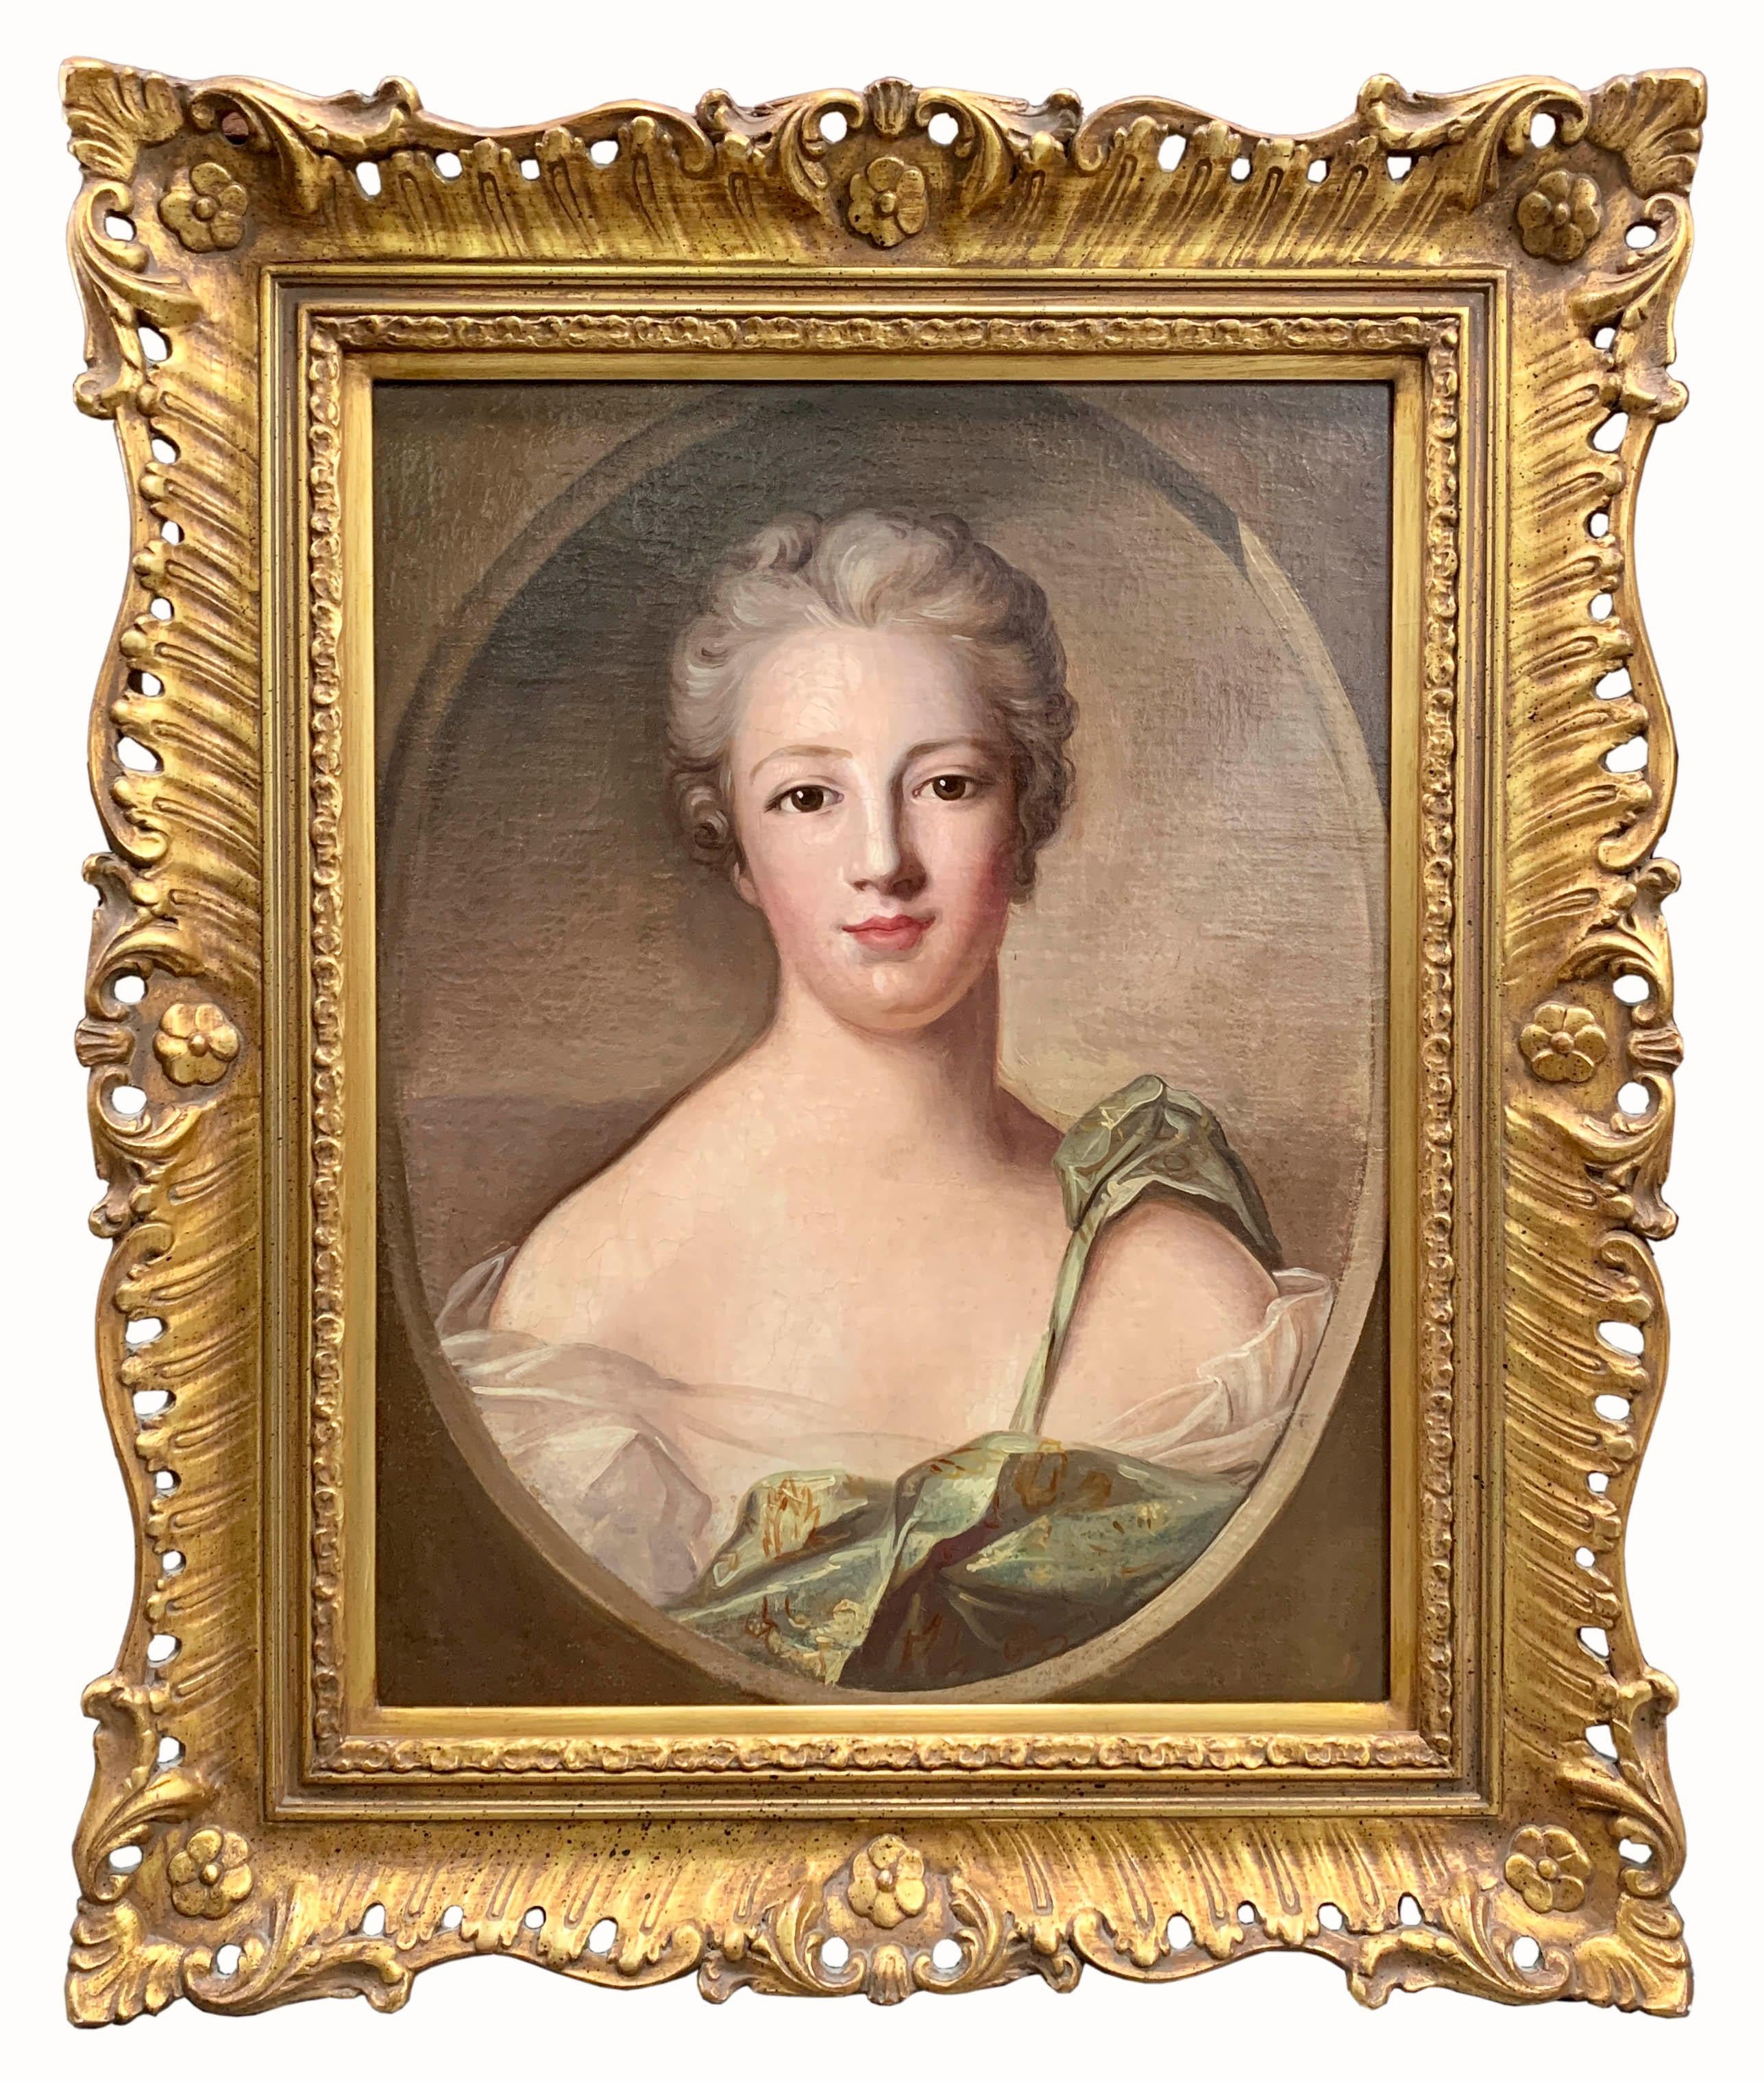 Une charmante paire de peintures à l'huile sur toile de la fin du 18e siècle anglais. Chaque tableau représente le portrait d'une jeune femme en ovale dans un cadre en bois doré sculpté. 

Circa 1790

Dimensions :
Cadre : 27,5